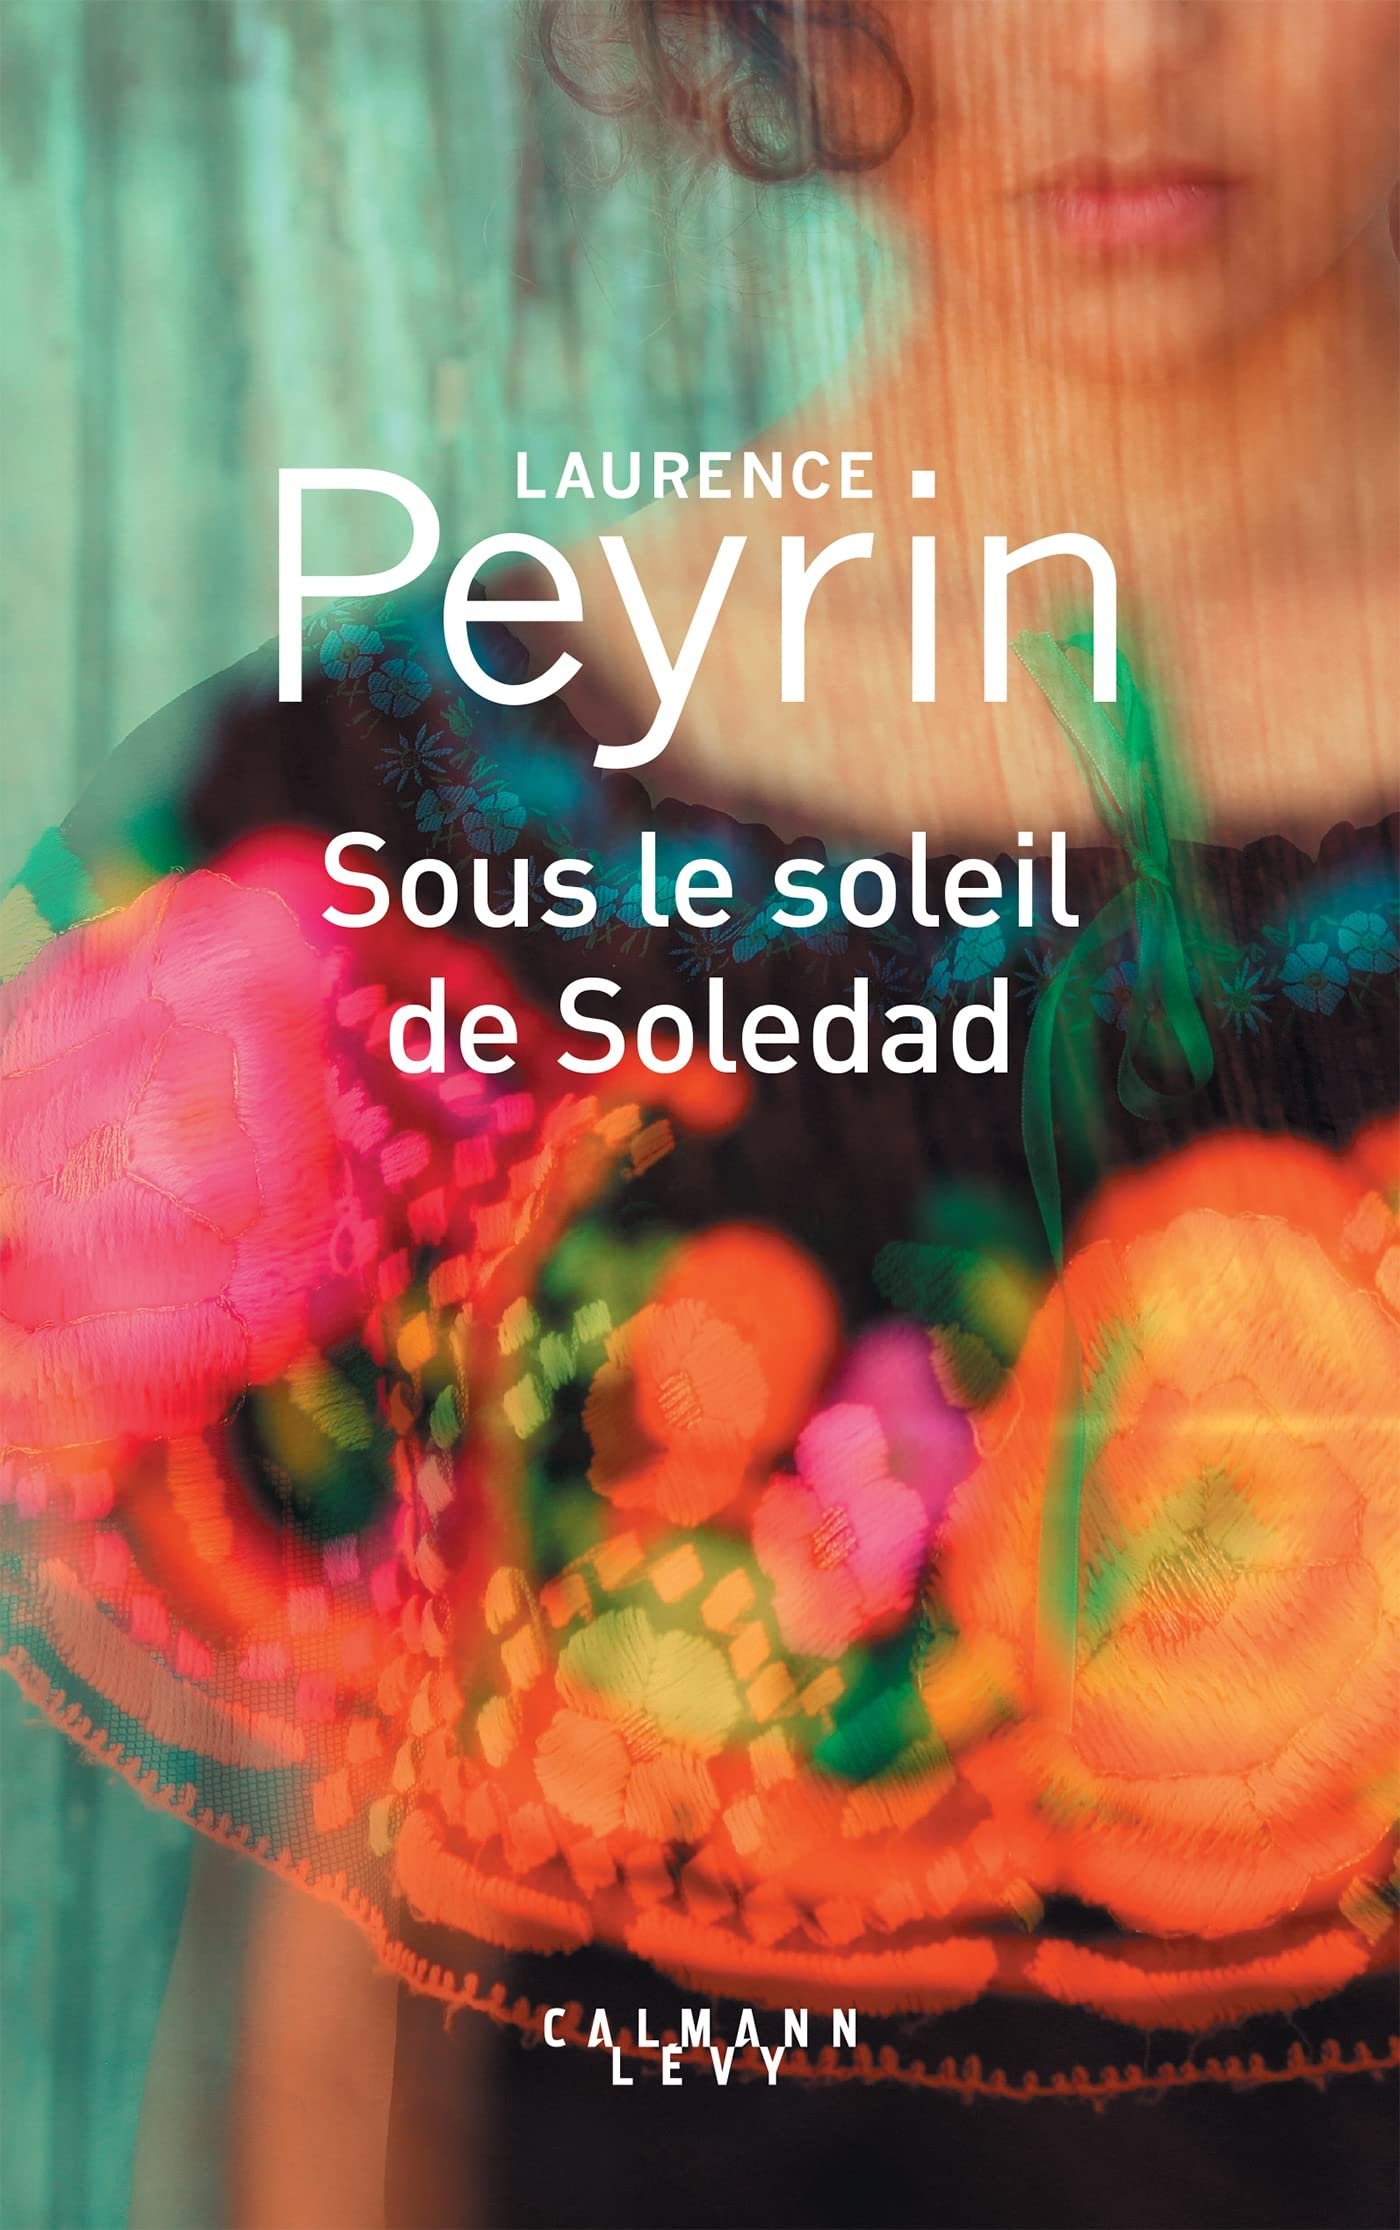 Laurence Peyrin – Sous le soleil de Soledad